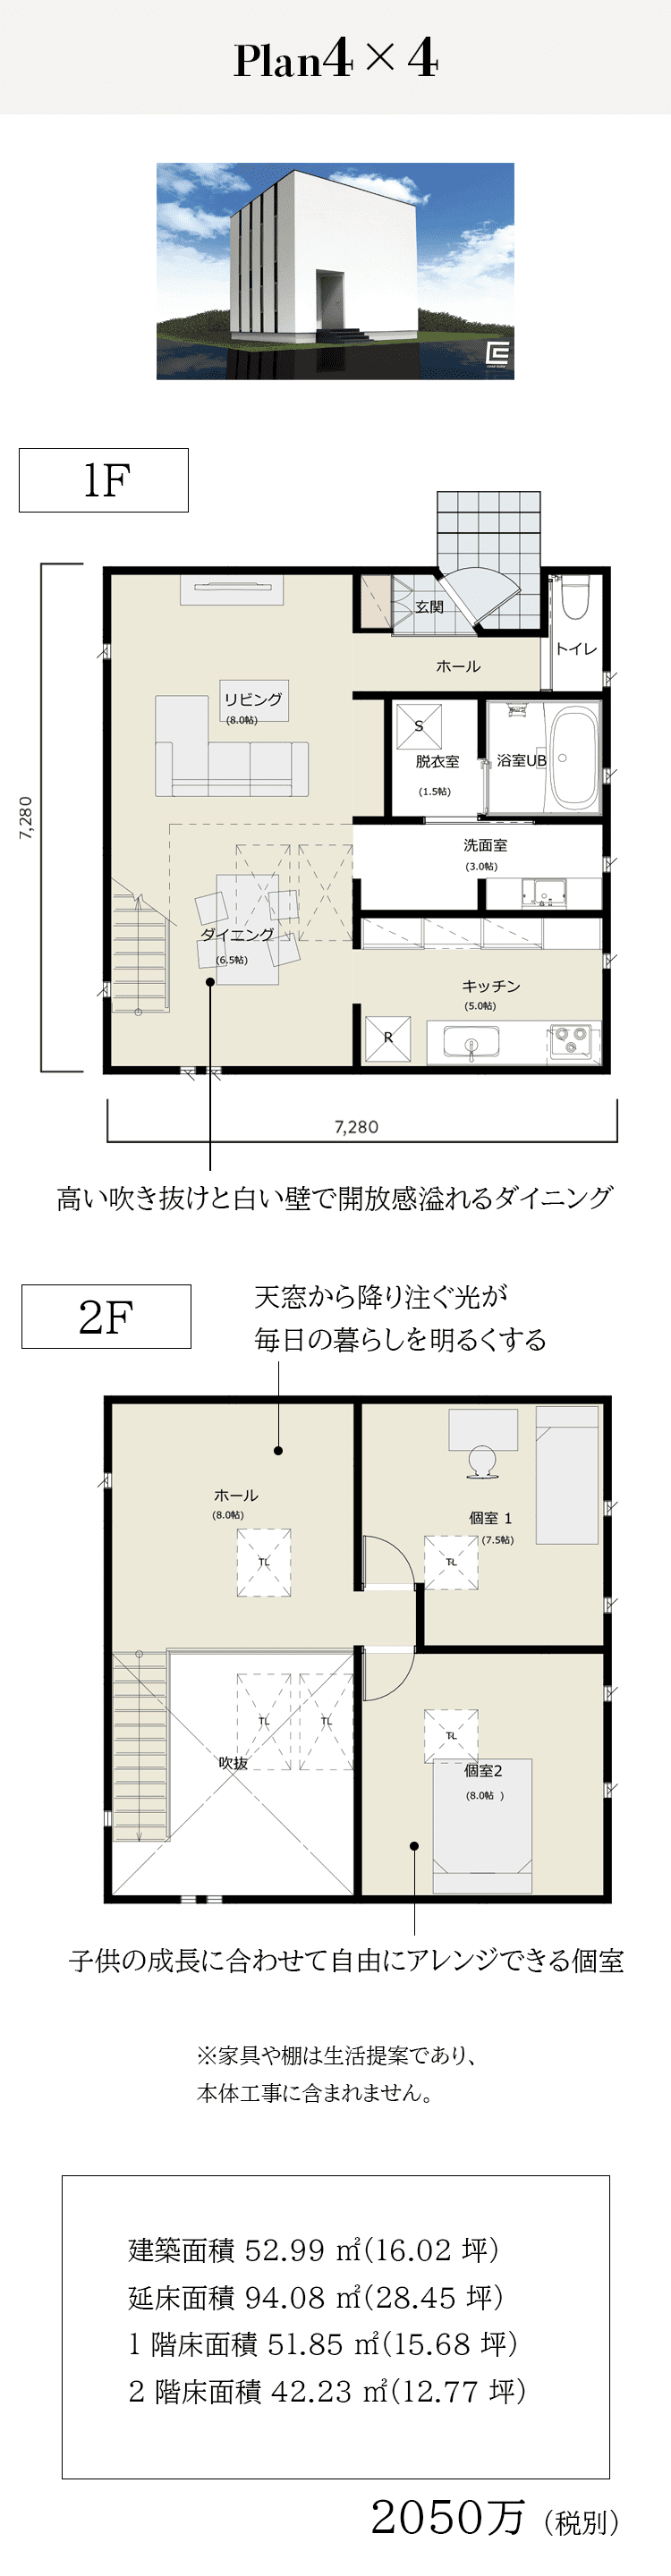 casa cube(カーサキューブ) - 大阪・堺の工務店ラックハウジング